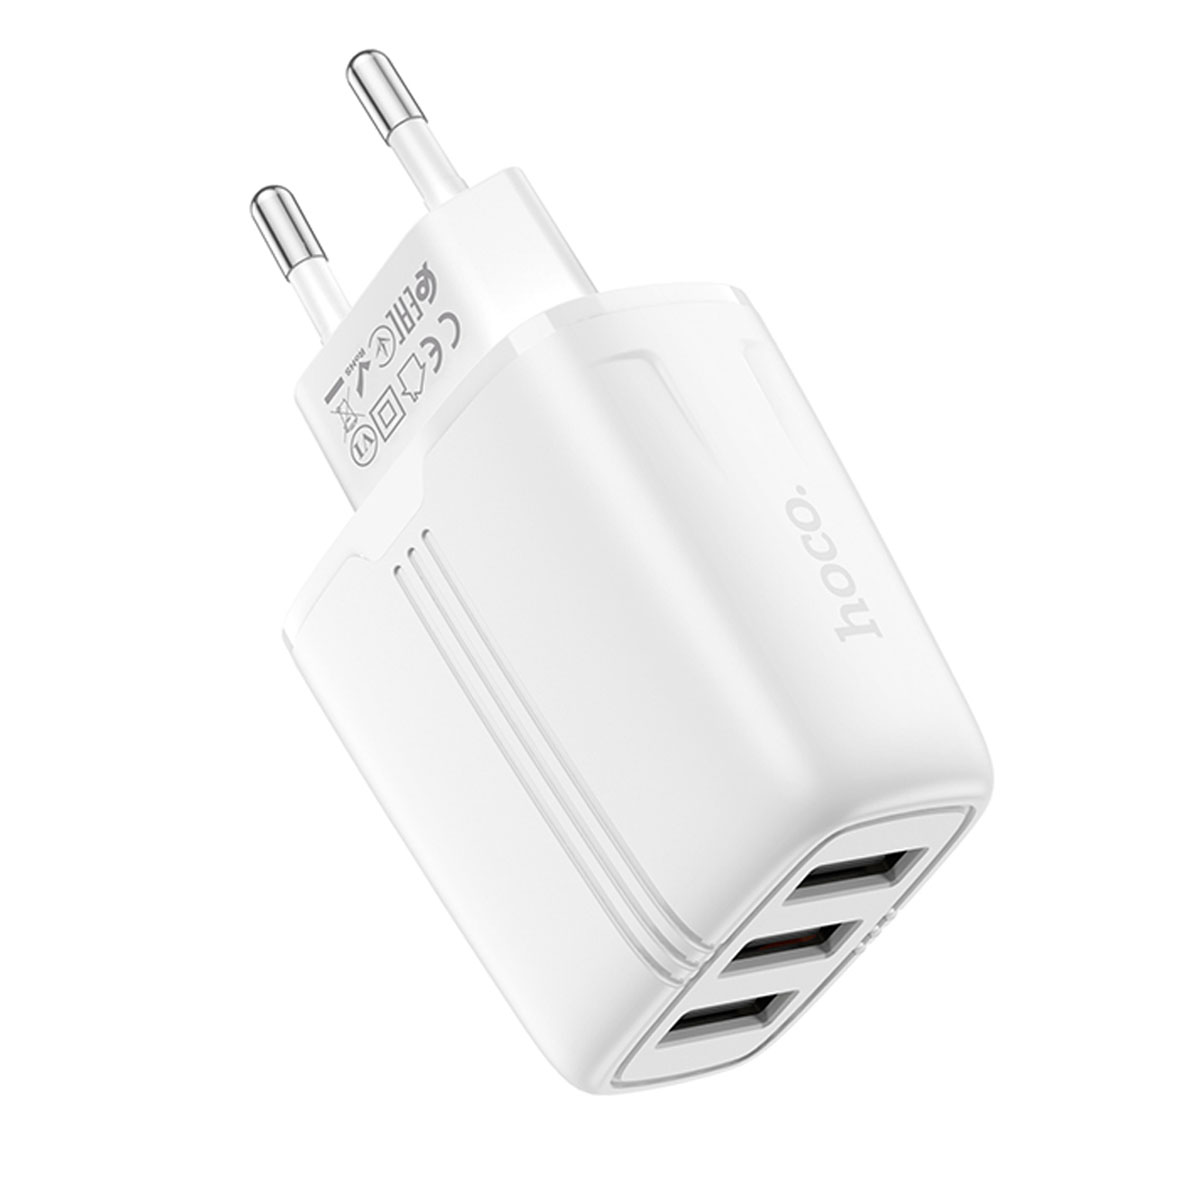 СЗУ (Сетевое зарядное устройство) HOCO N15 Amazing, 2.4A, 3 USB, цвет белый